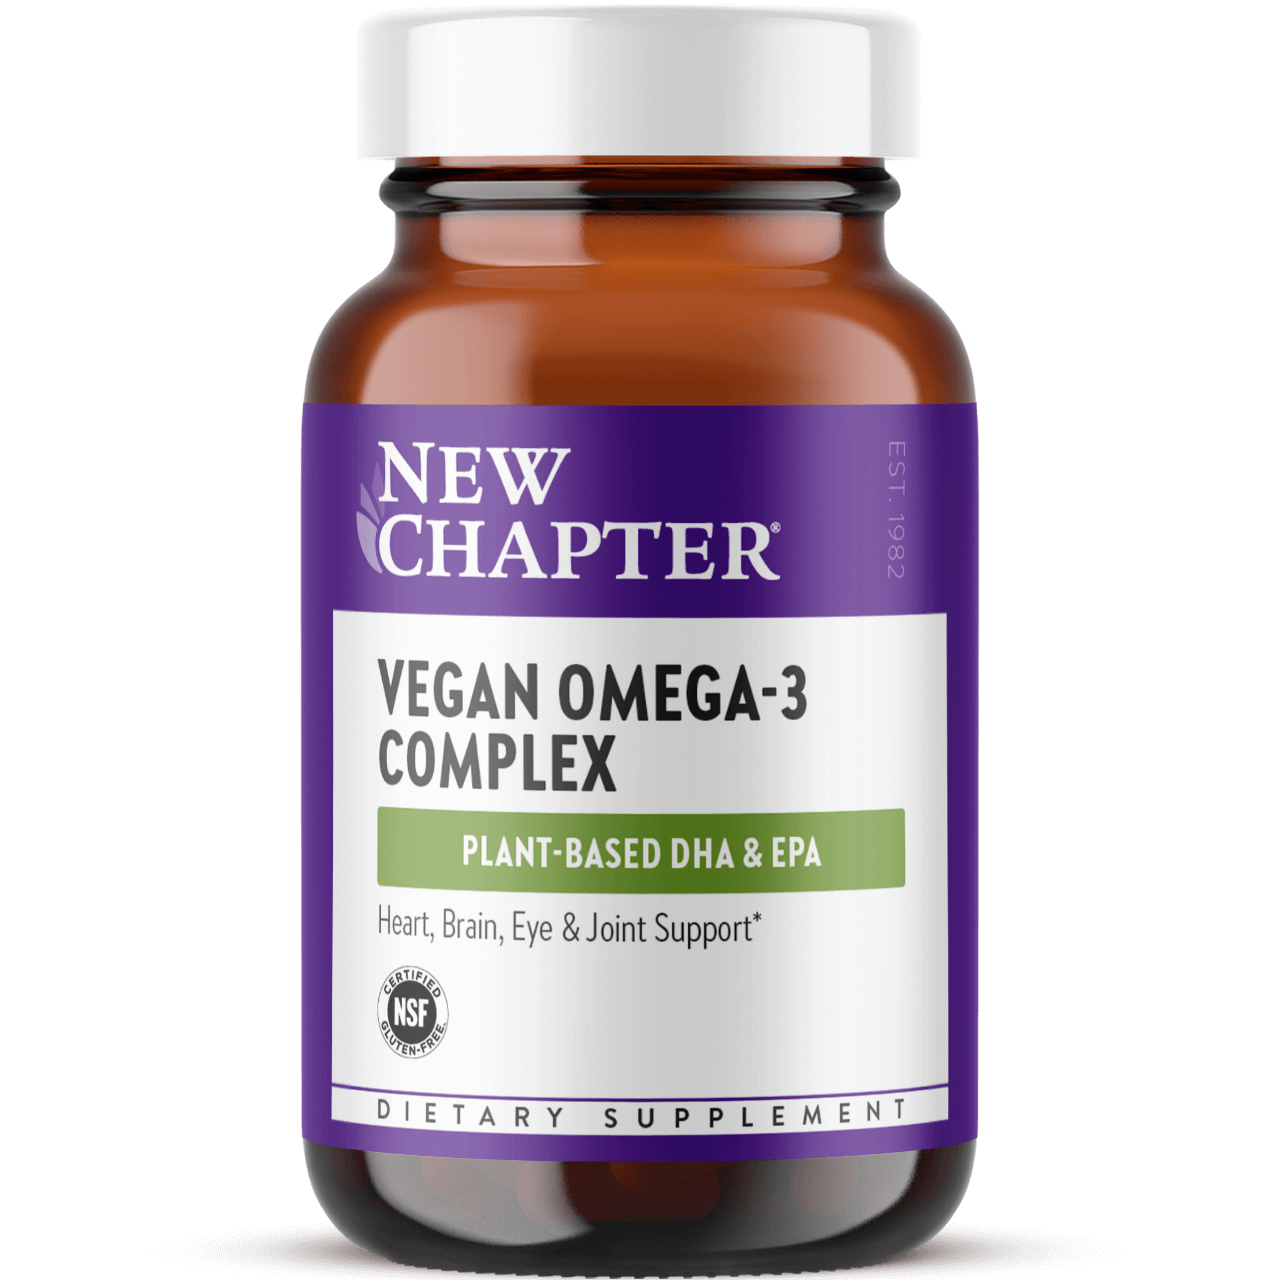 Vegan Omega-3 Complex